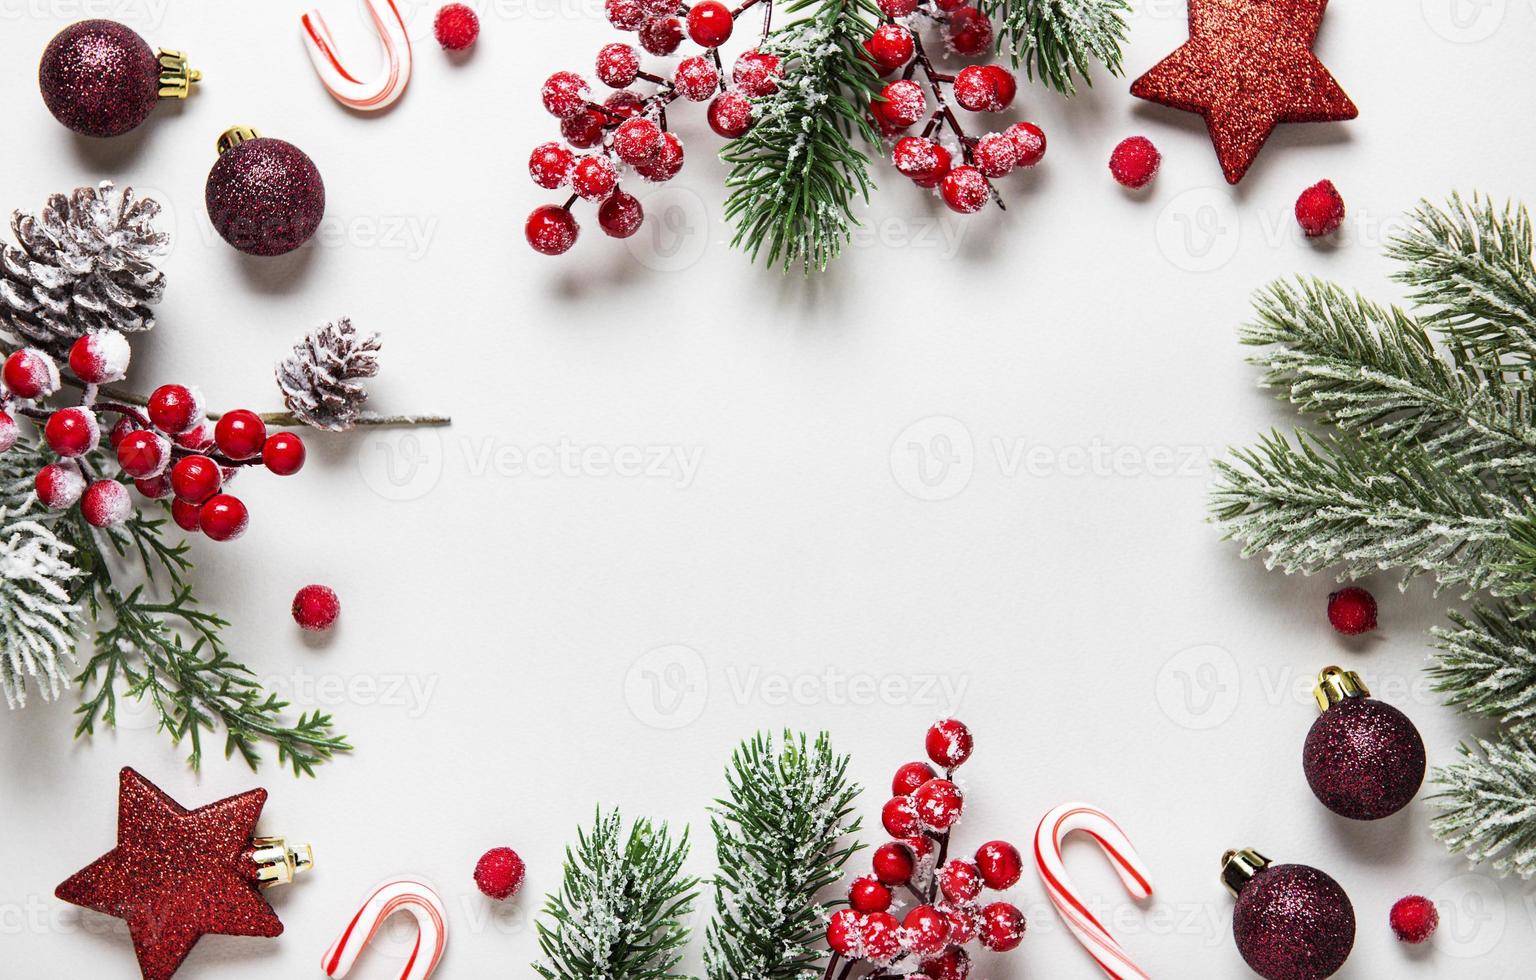 Hãy trang trí cho màn hình của bạn với những bức hình nền đẹp lung linh liên quan đến mùa lễ Giáng Sinh này. Với những hình ảnh về ông già Noel, những chú tuần lộc xinh xắn hay những ngôi nhà sáng tràn đầy ánh đèn, bạn sẽ có những khoảnh khắc tuyệt vời hơn trong mùa đông này.